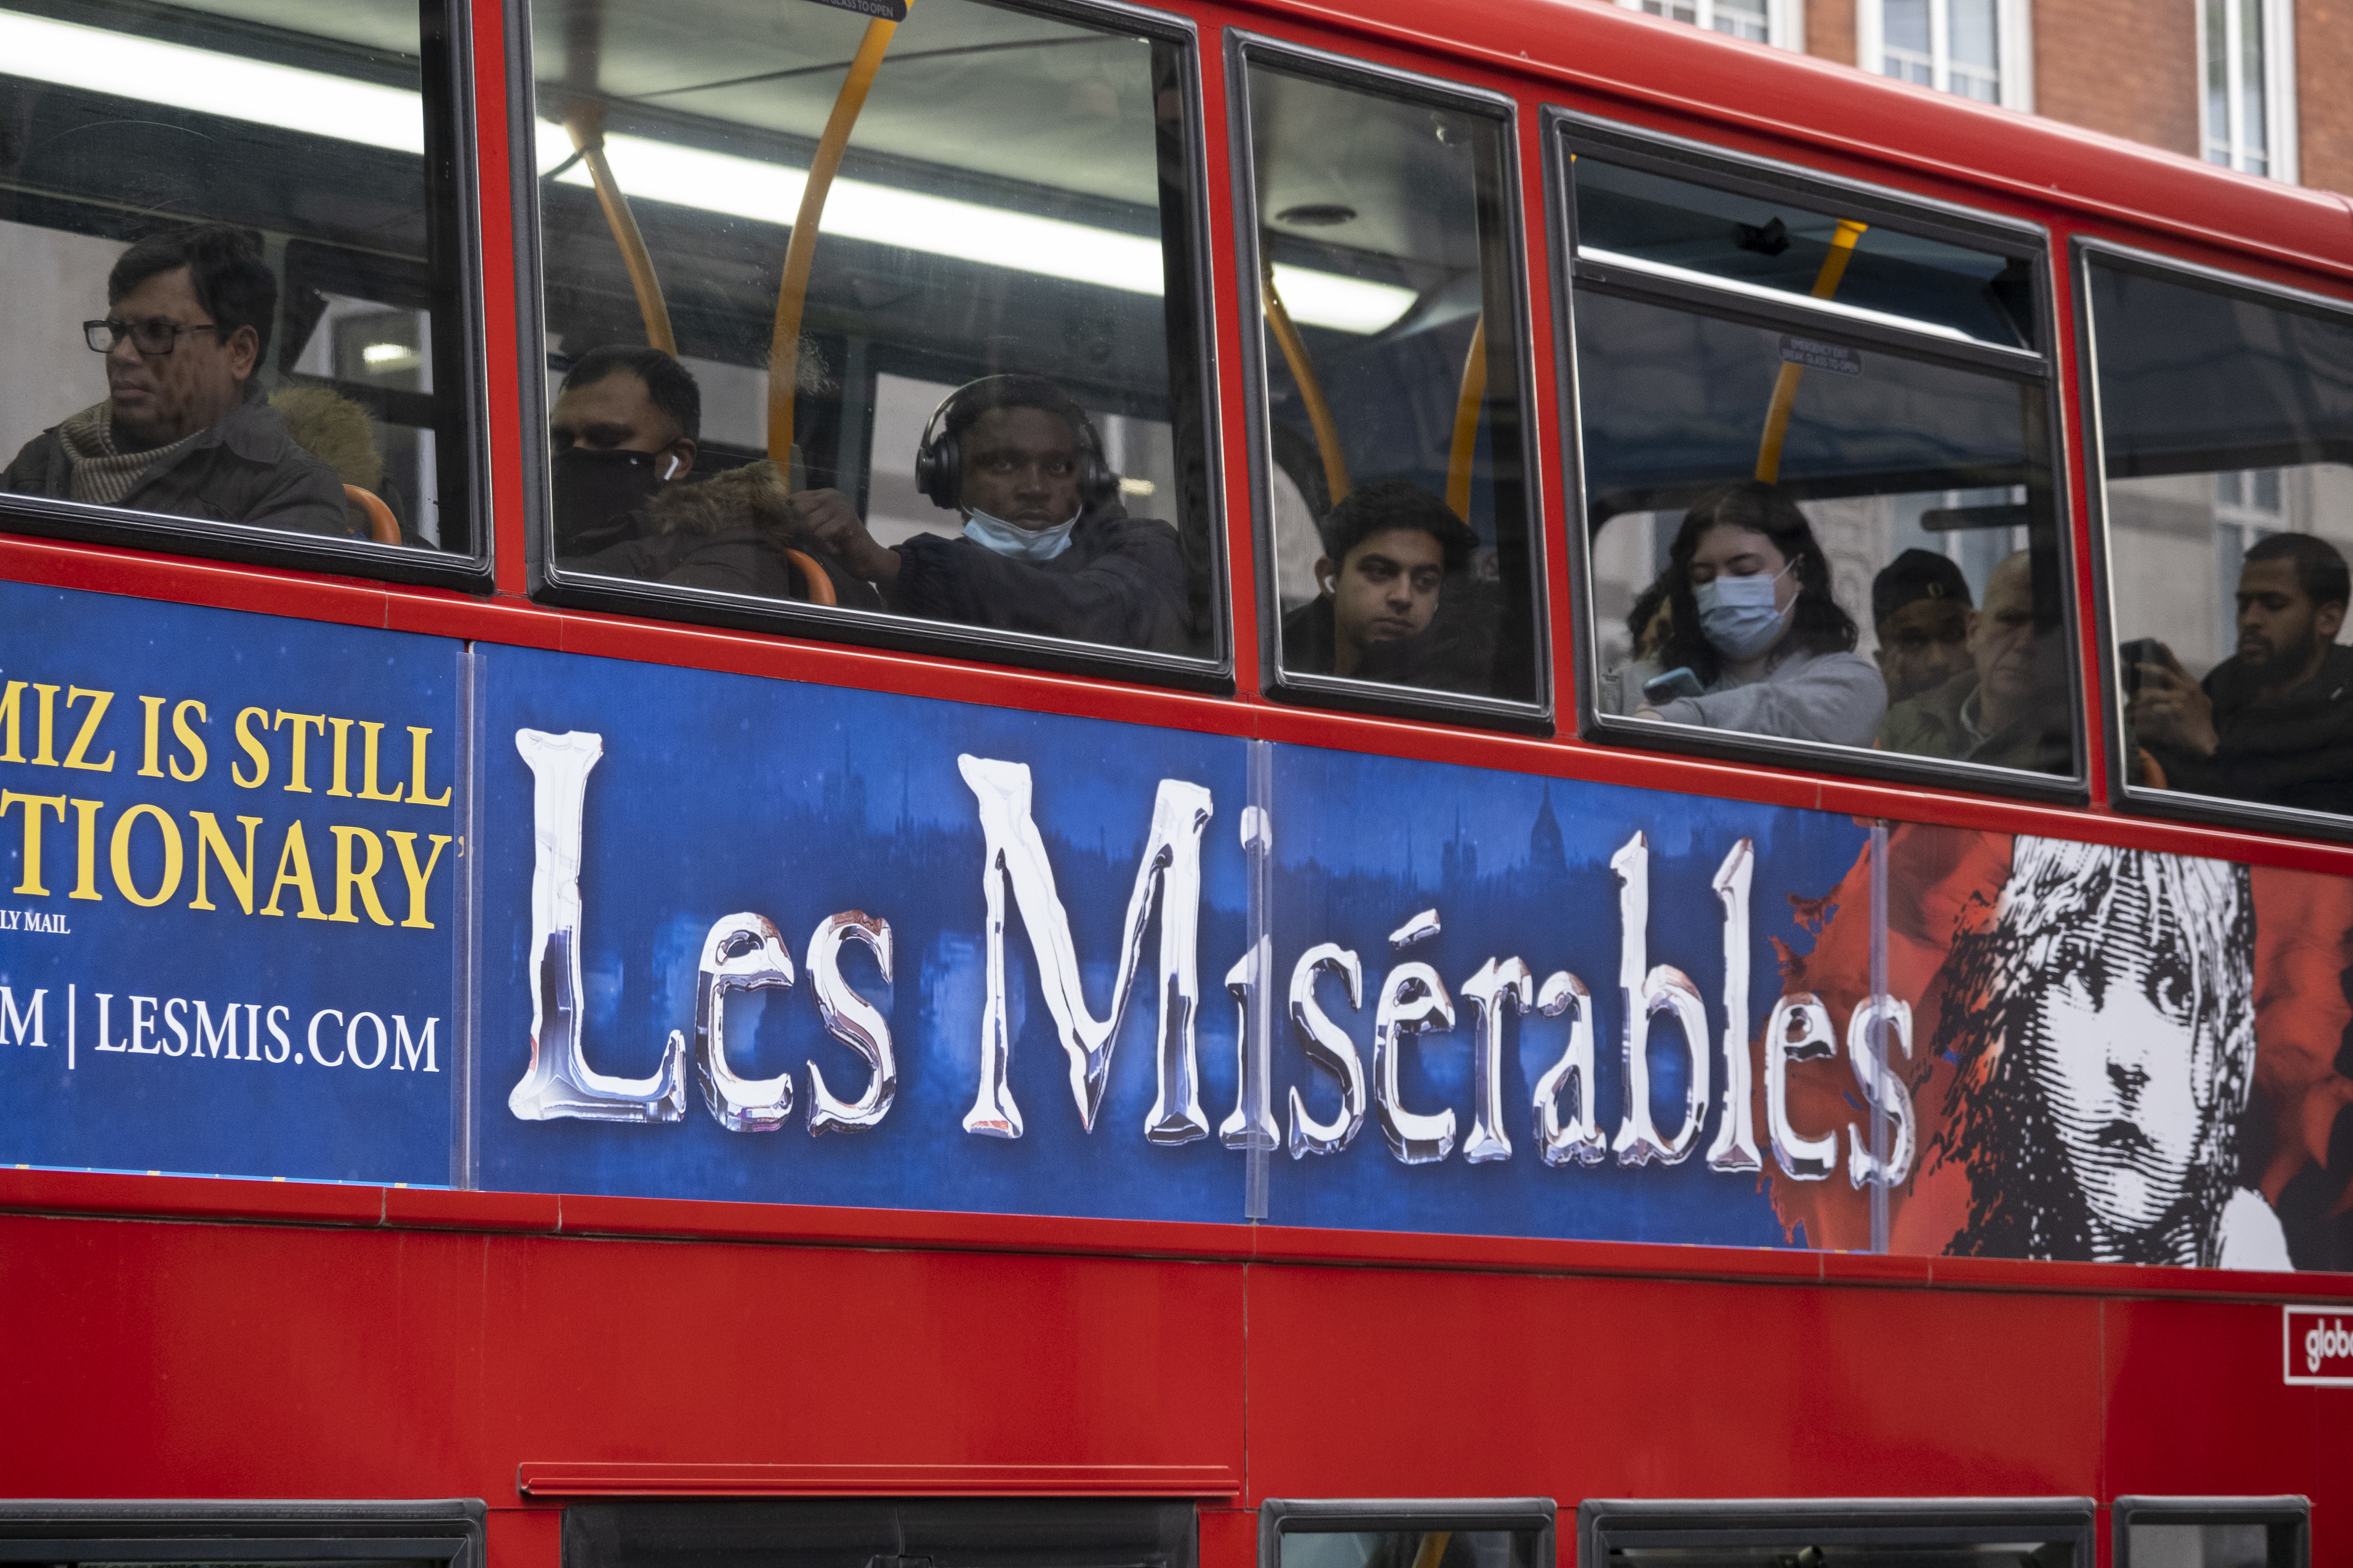 A bus with Les Misérables ad on it